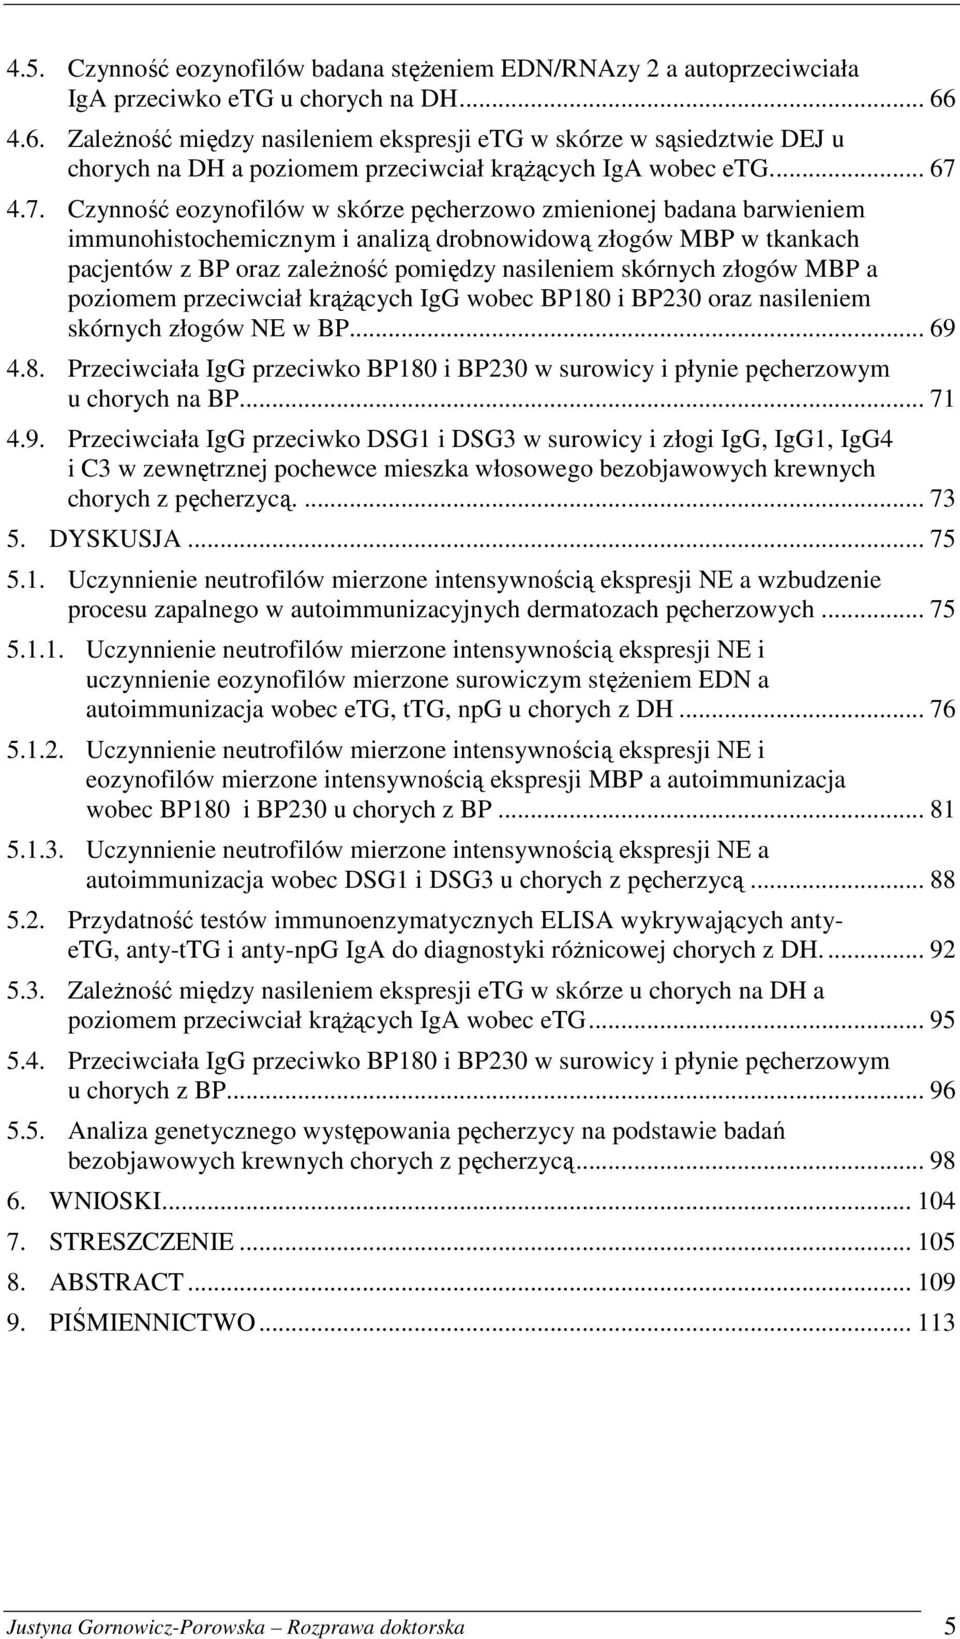 4.7. Czynność eozynofilów w skórze pęcherzowo zmienionej badana barwieniem immunohistochemicznym i analizą drobnowidową złogów MBP w tkankach pacjentów z BP oraz zależność pomiędzy nasileniem